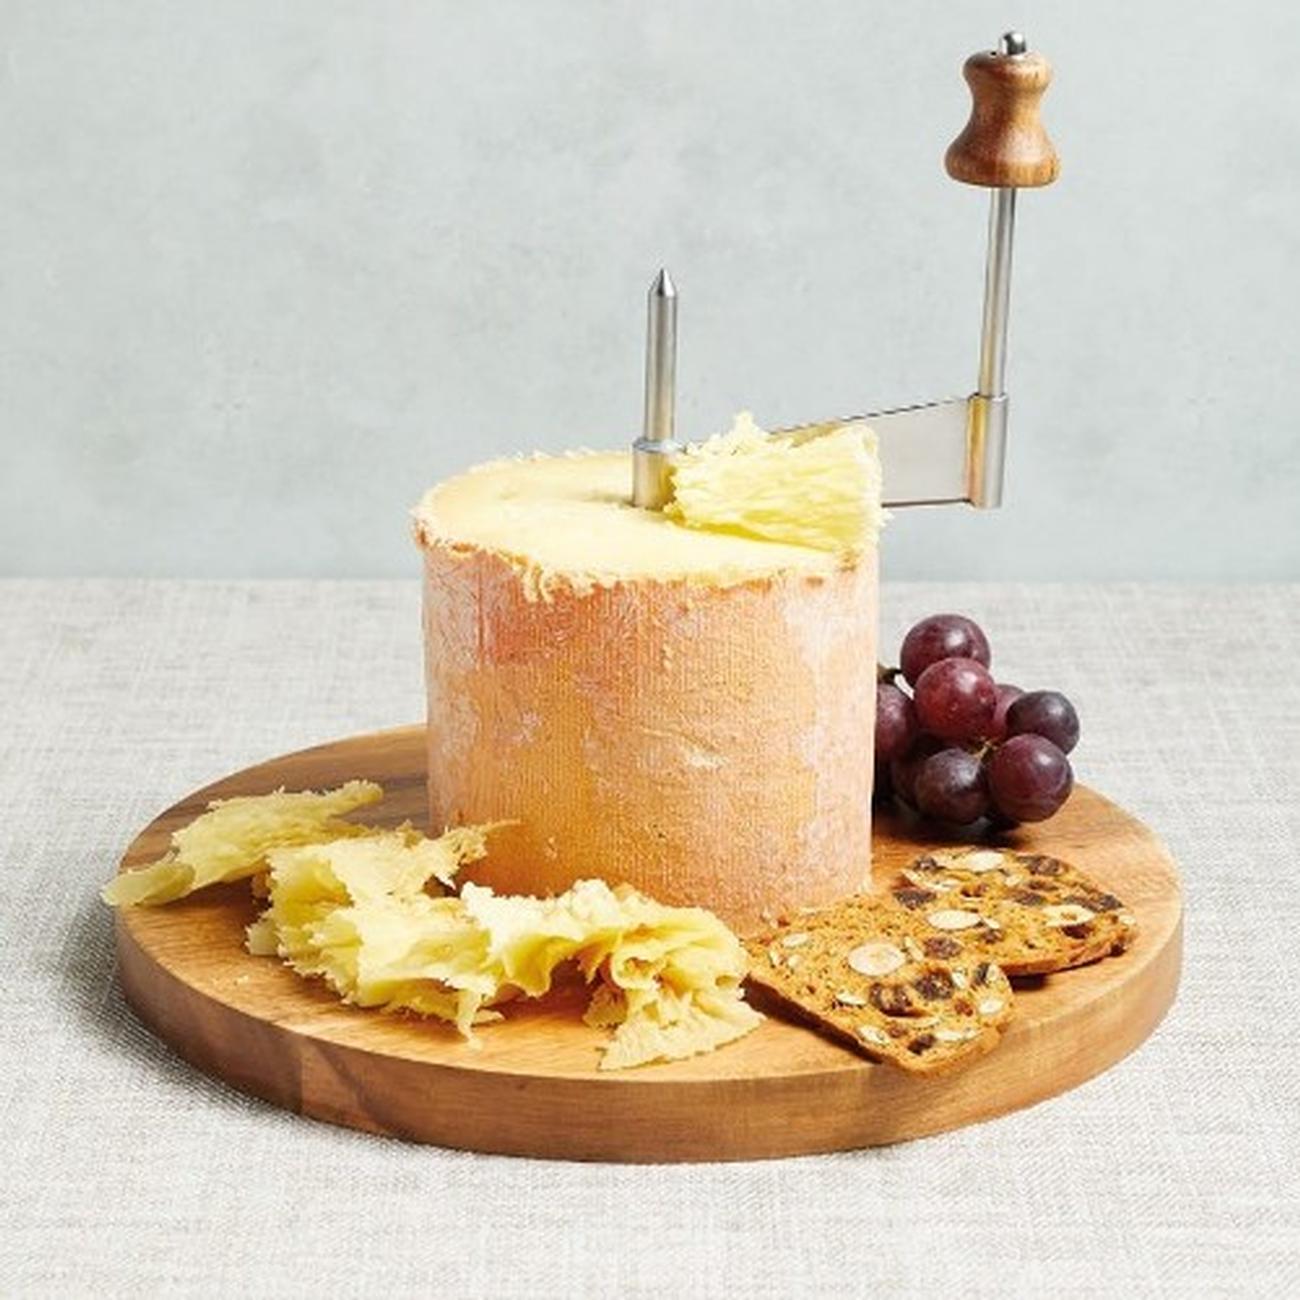 Girolle Cheese Curler for Tete de Moine